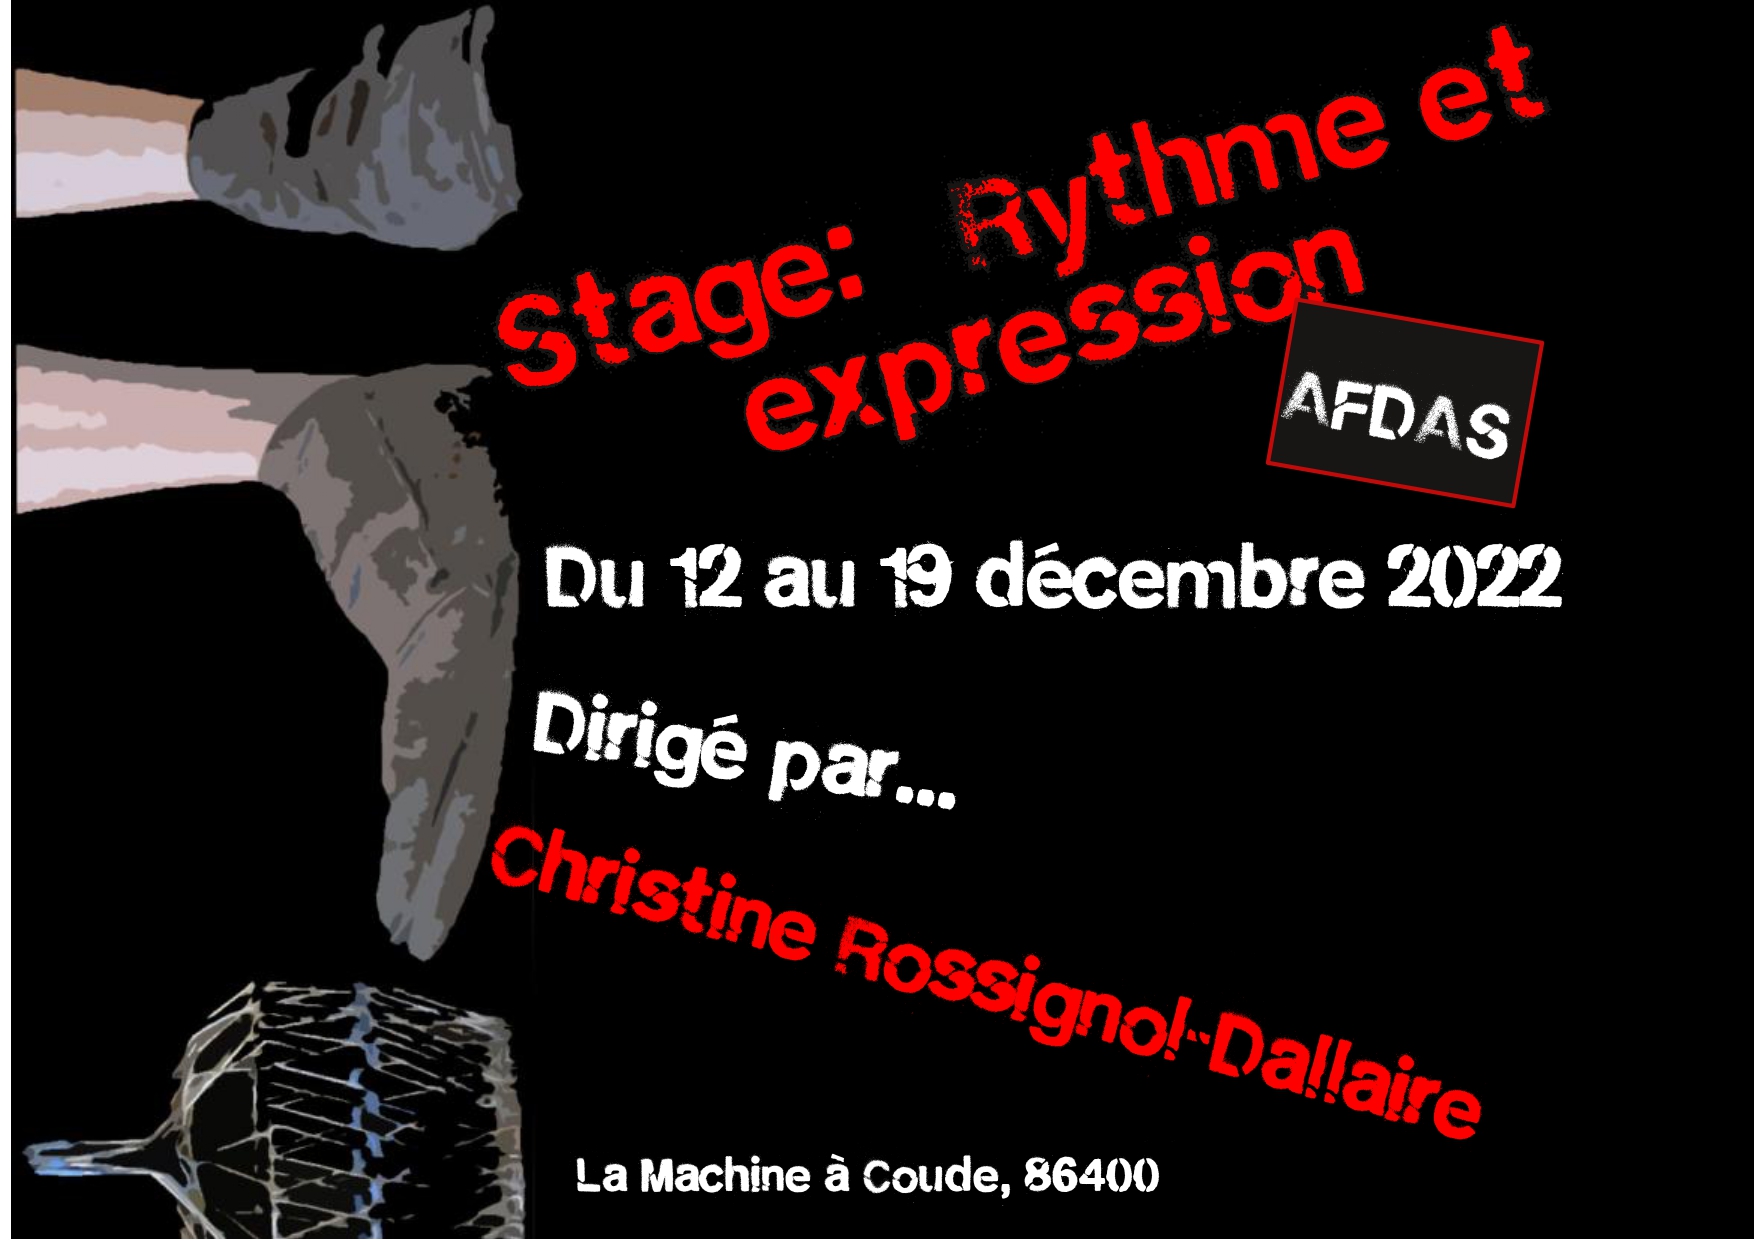 Rythme et expression (Péda. Dallaire) dirigé par C. Rossignol